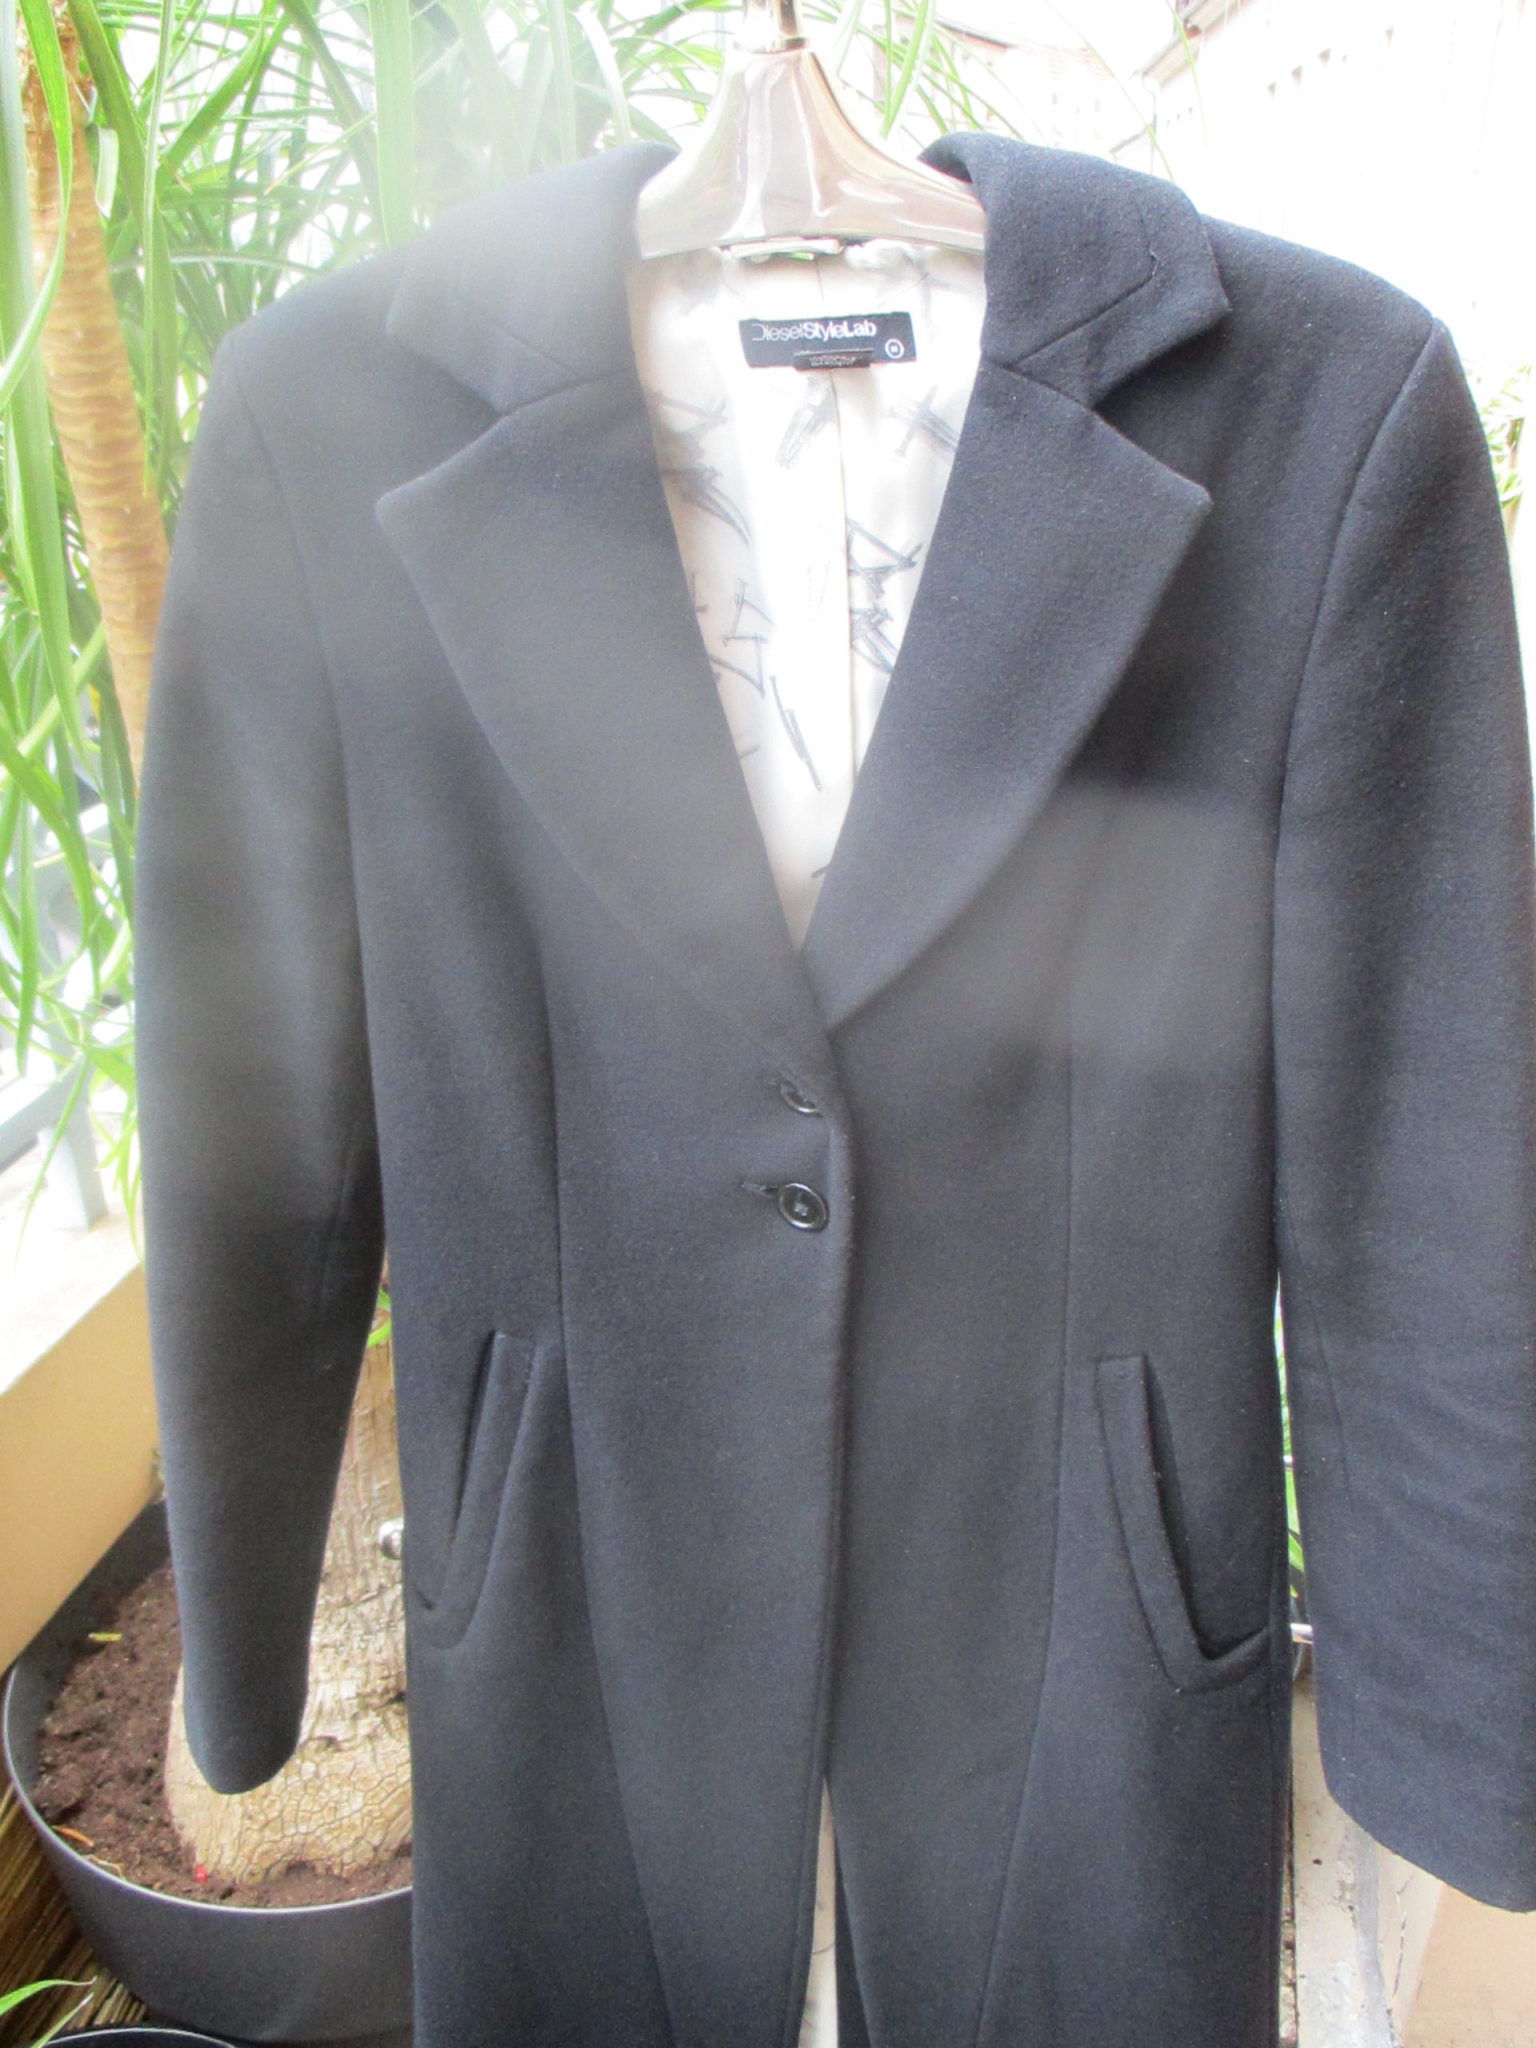 Long black wool coat by Diesel Style Lab